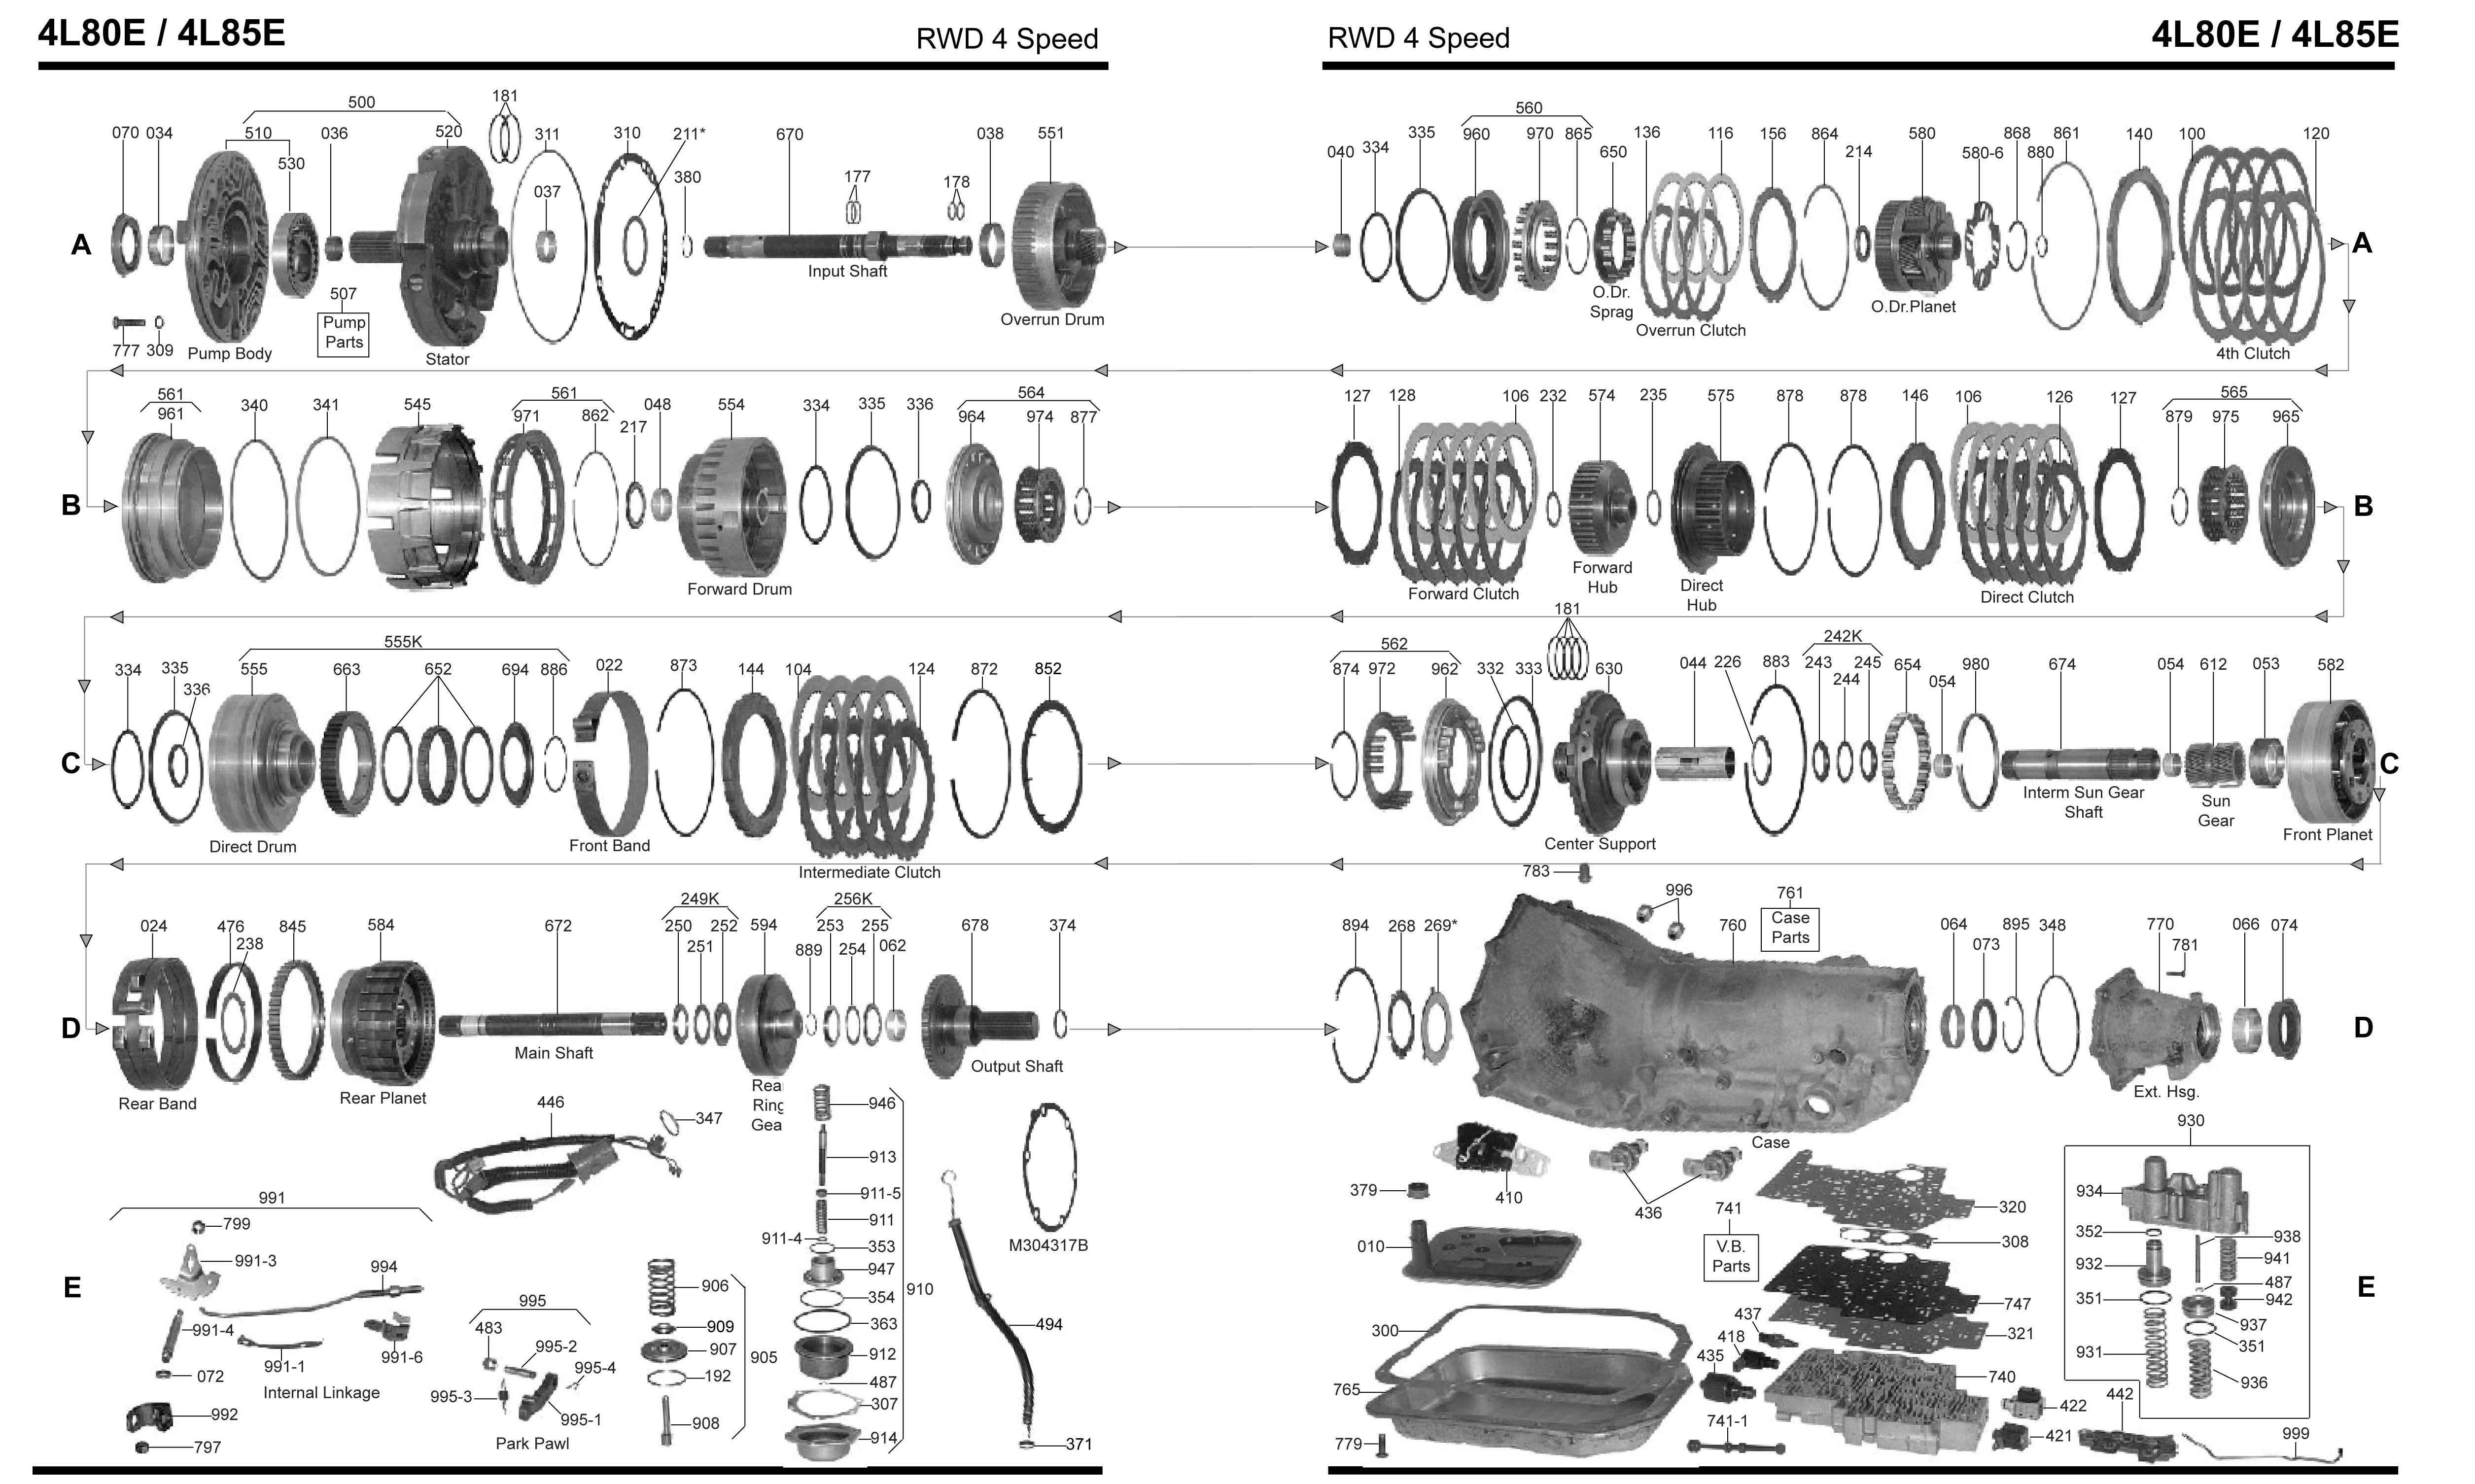 Chevy S10 Parts Diagram 4l60e Parts Diagram Wiring Diagram Of Chevy S10 Parts Diagram